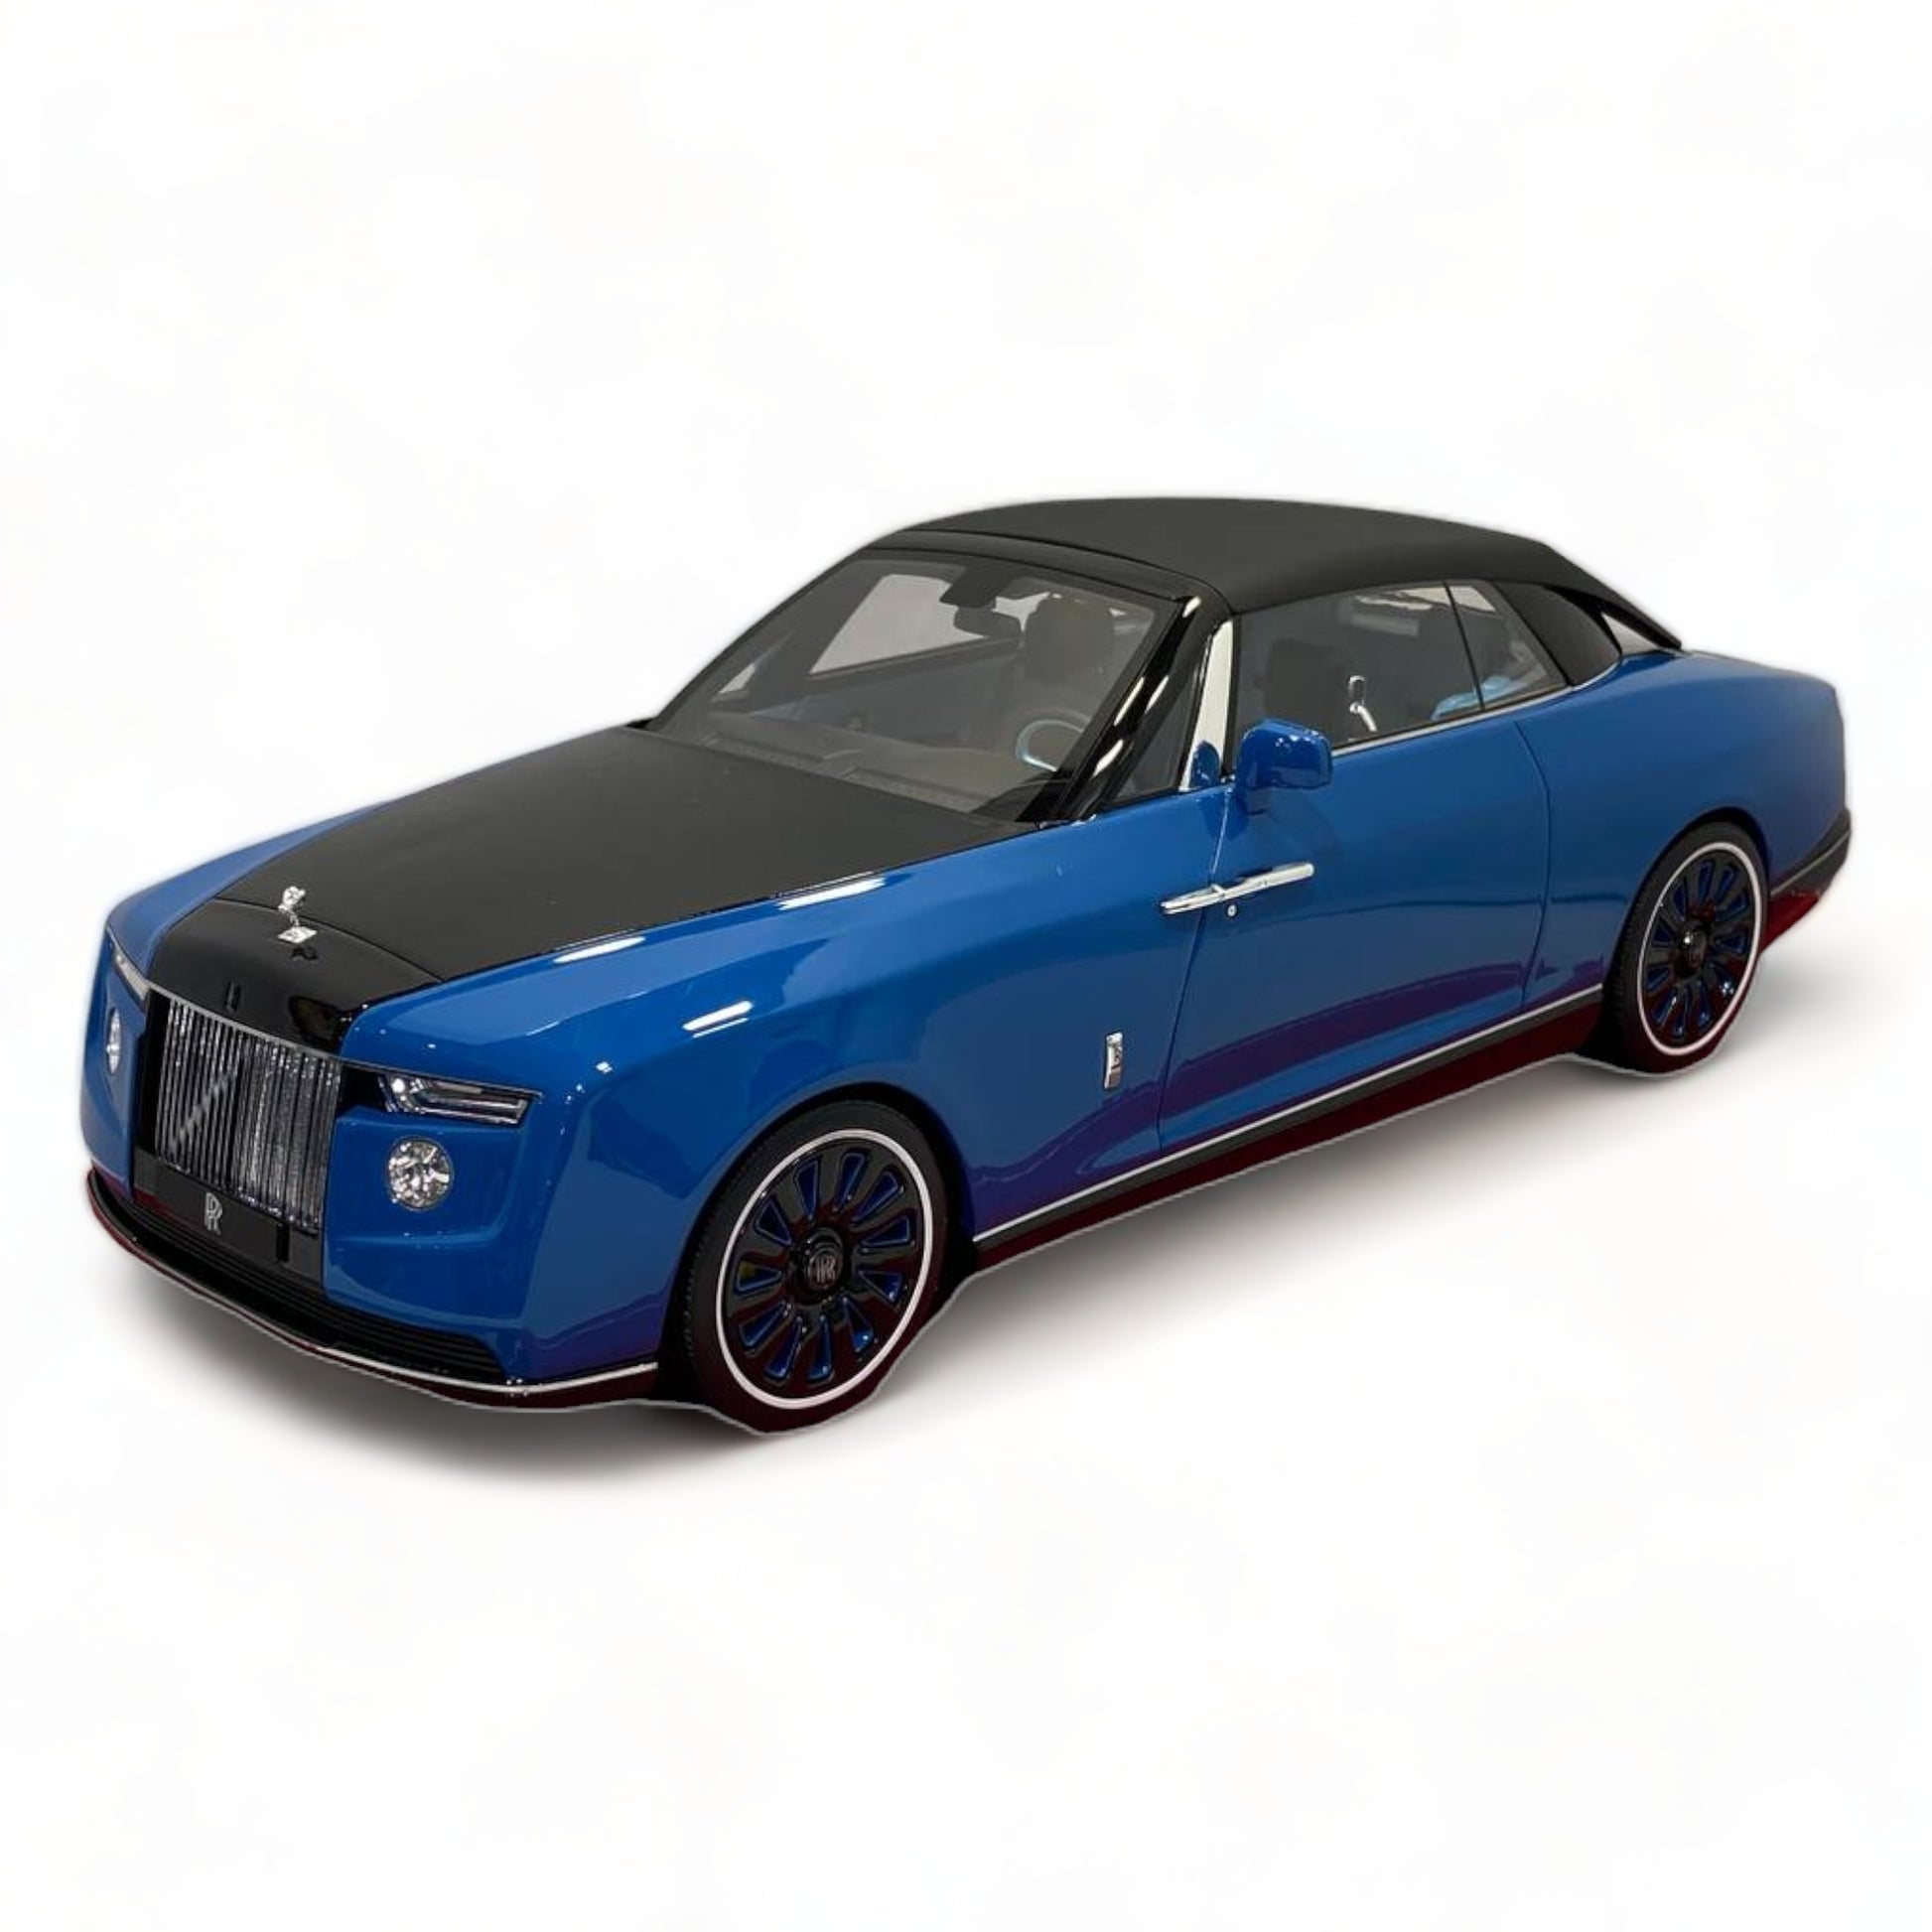 1/18 Rolls-Royce BOAT TAIL Blue Scale Model Car|Sold in Dturman.com Dubai UAE.